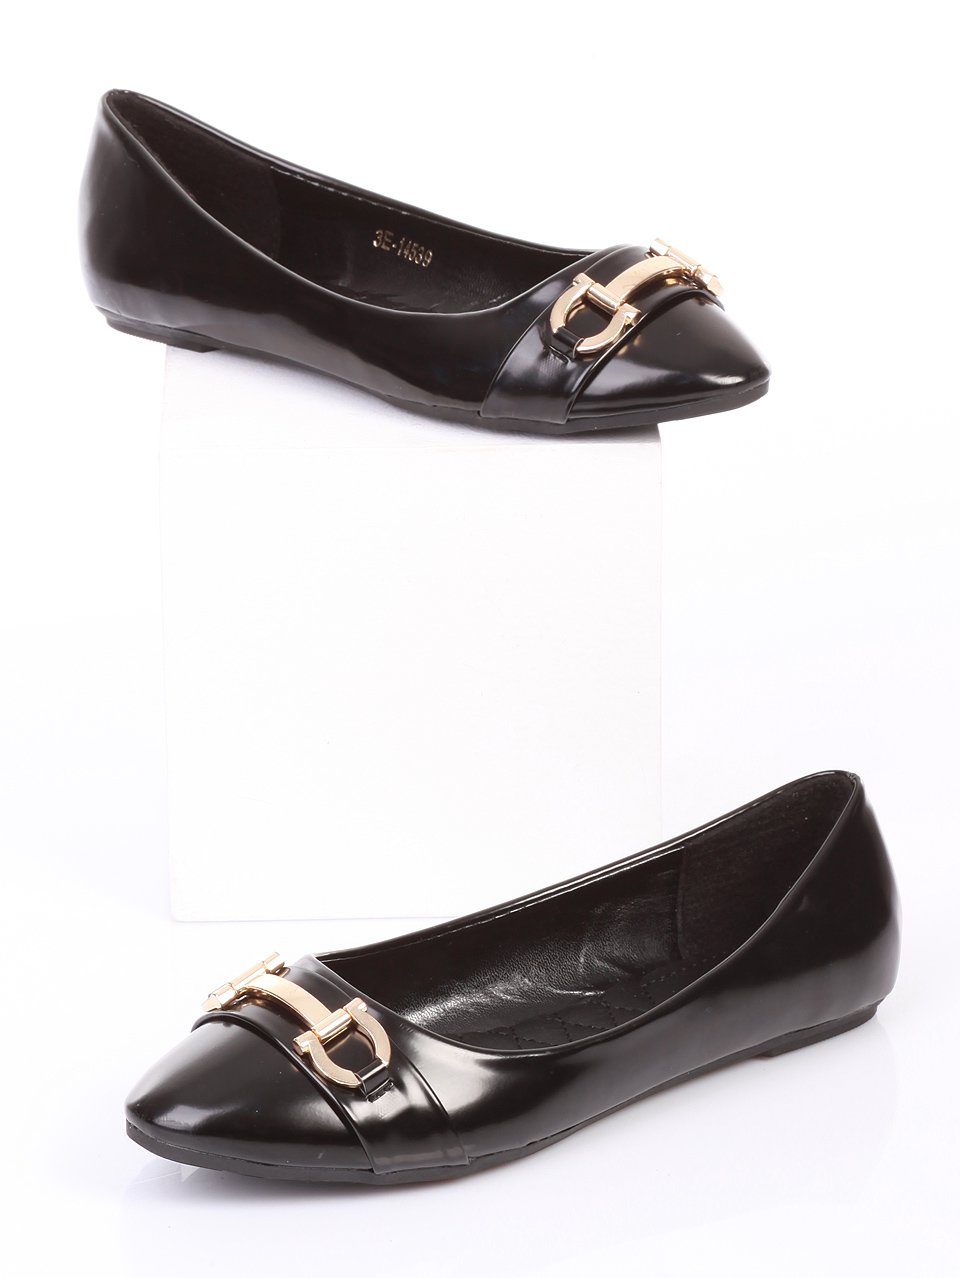 Ежедневни дамски обувки в черно 3E-14539 black pu